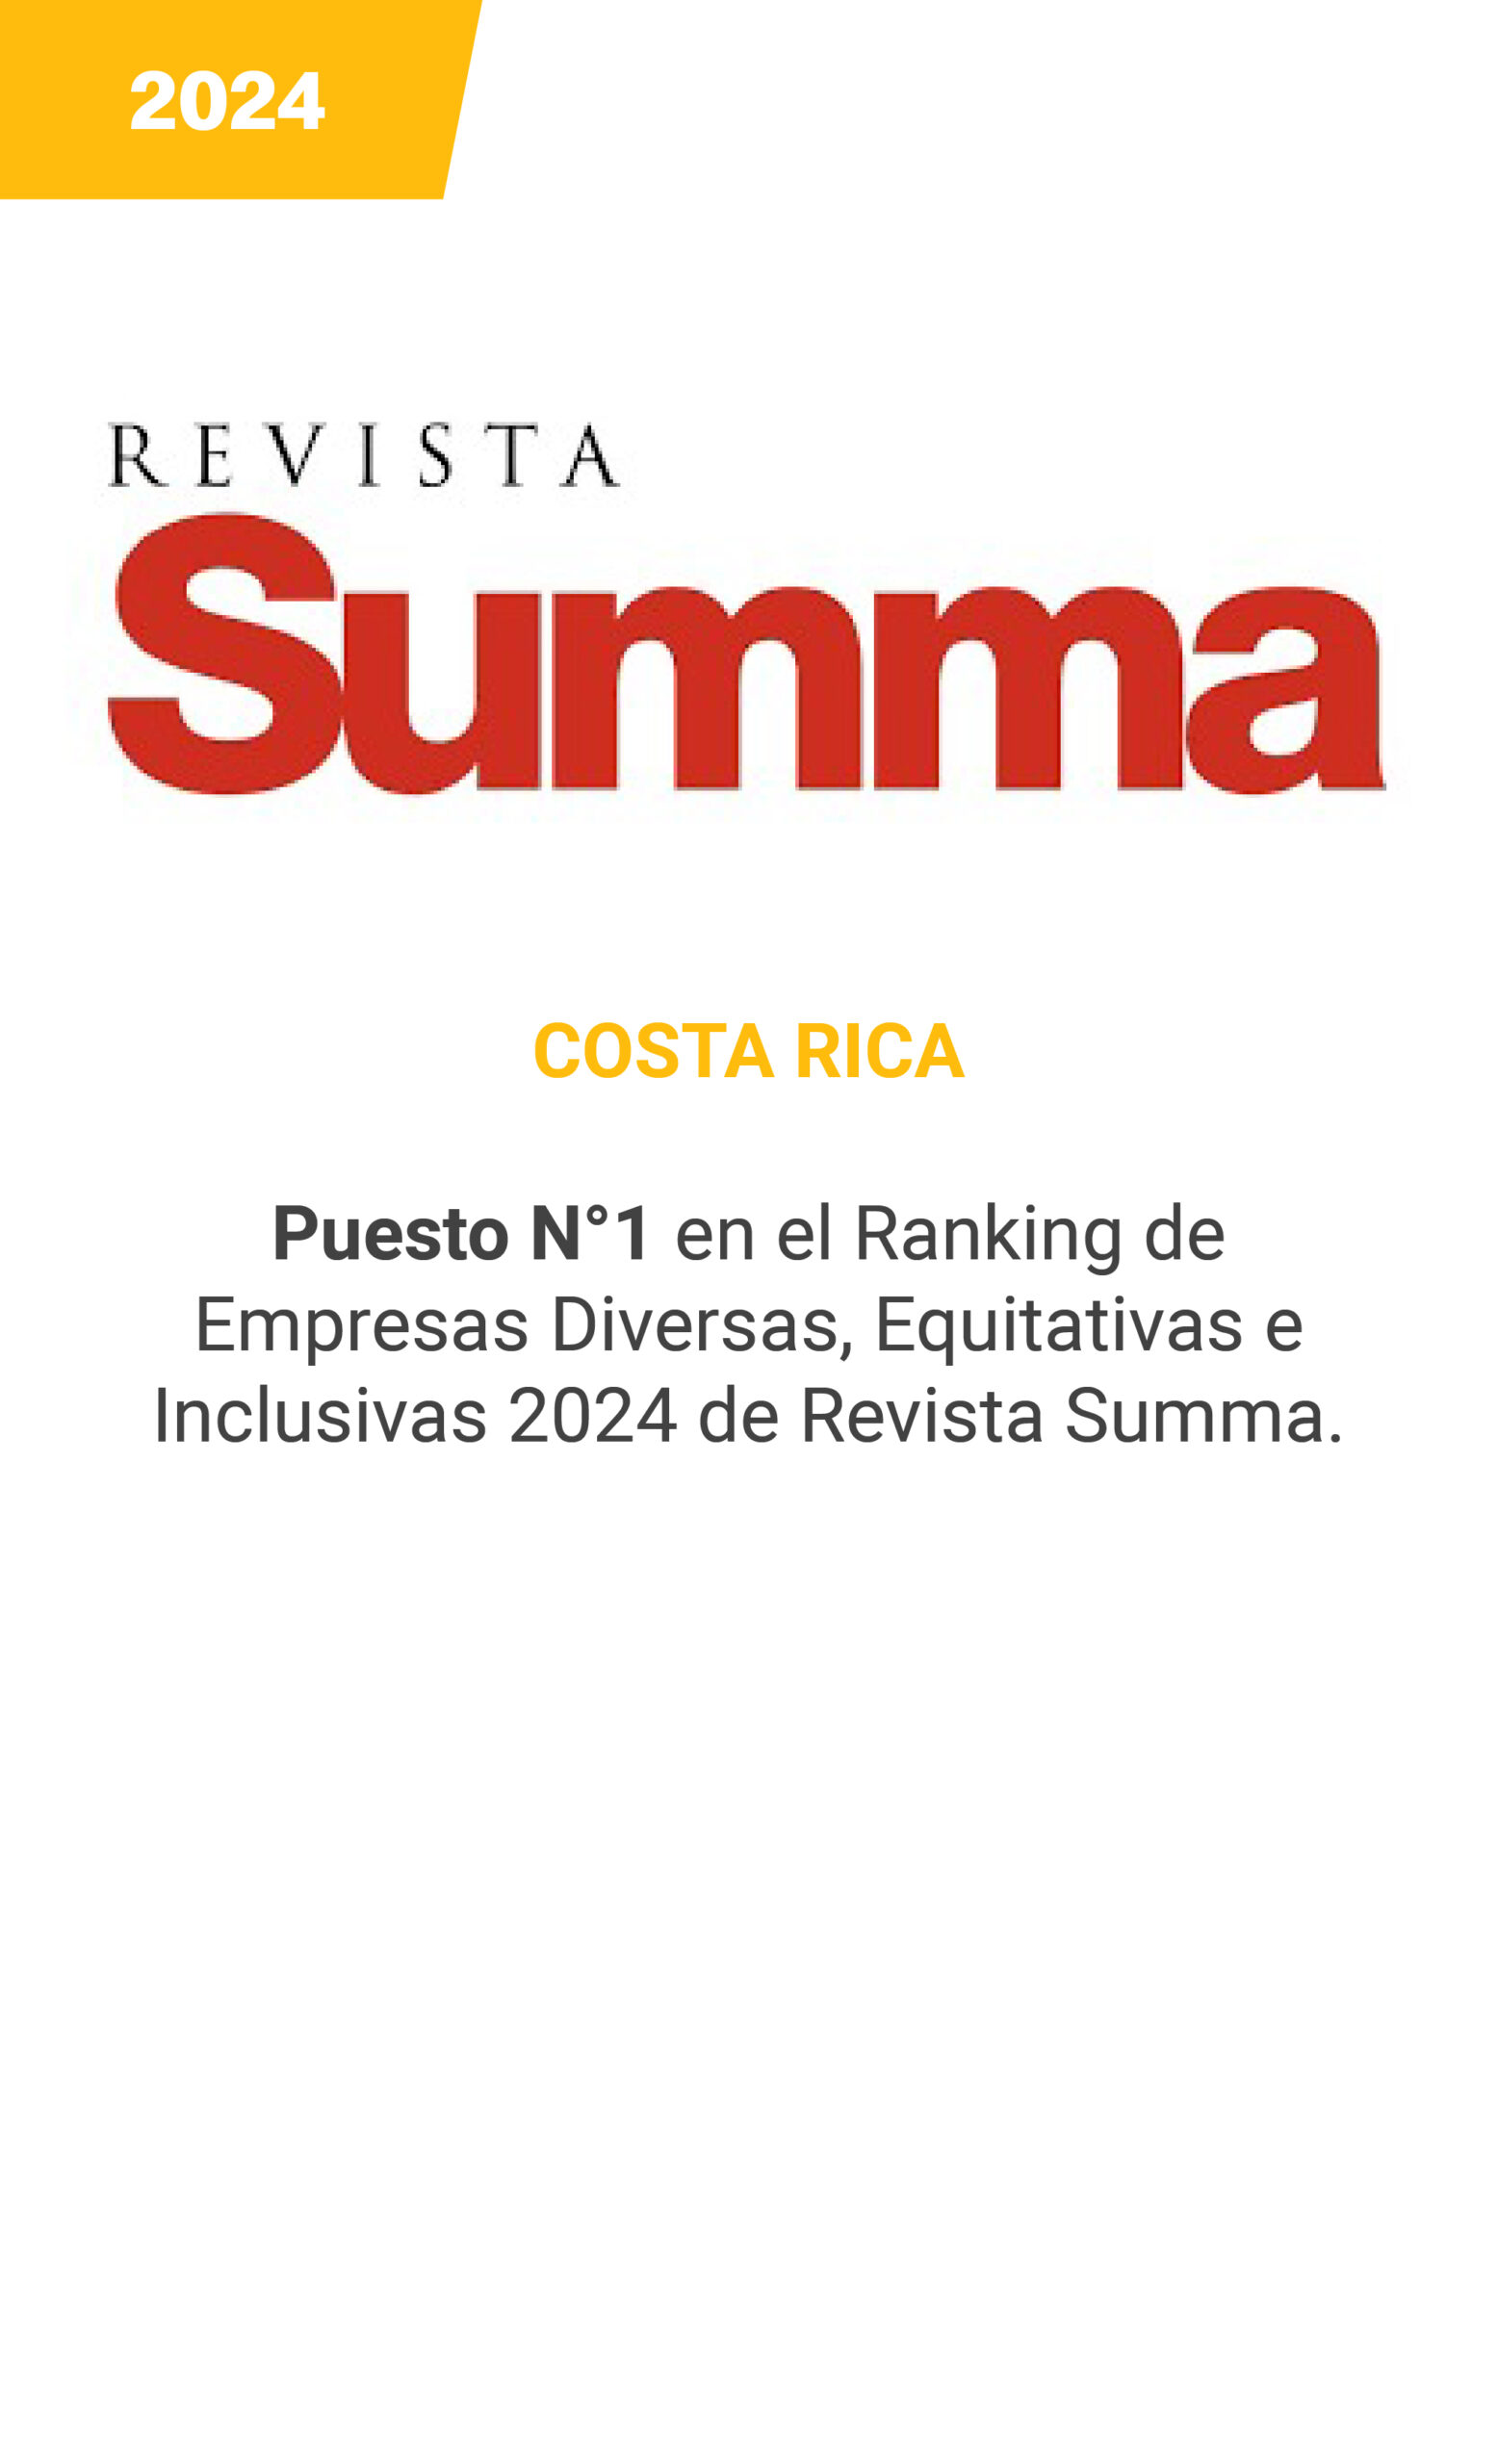 Revista SUMMA - Costa Rica - mobile